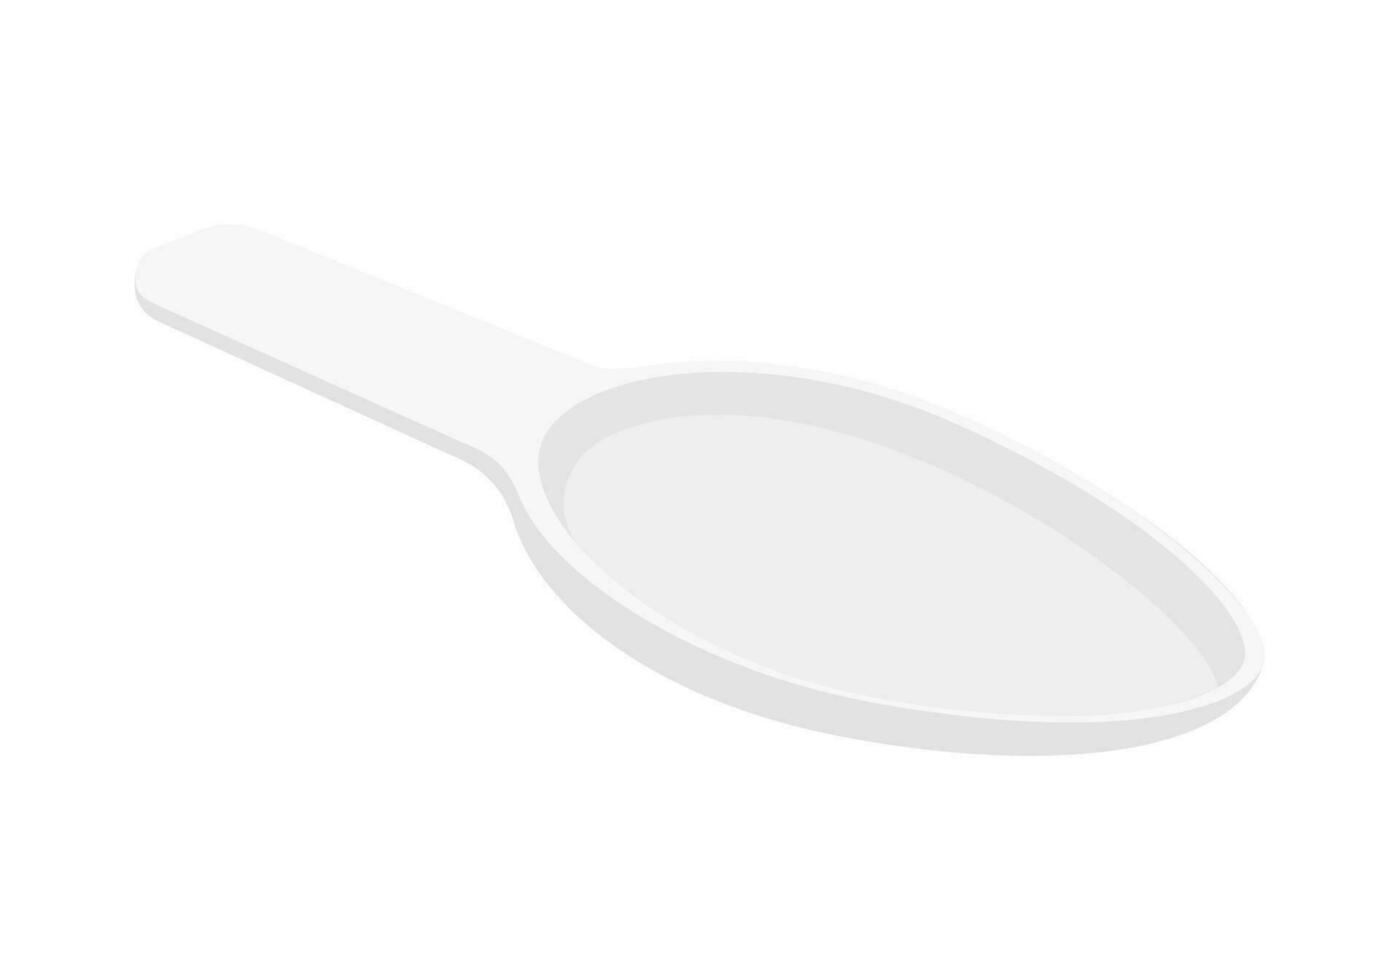 Empty dosage spoon for baby cough syrup or mixture. Measuring spoon for oral liquid medicine vector